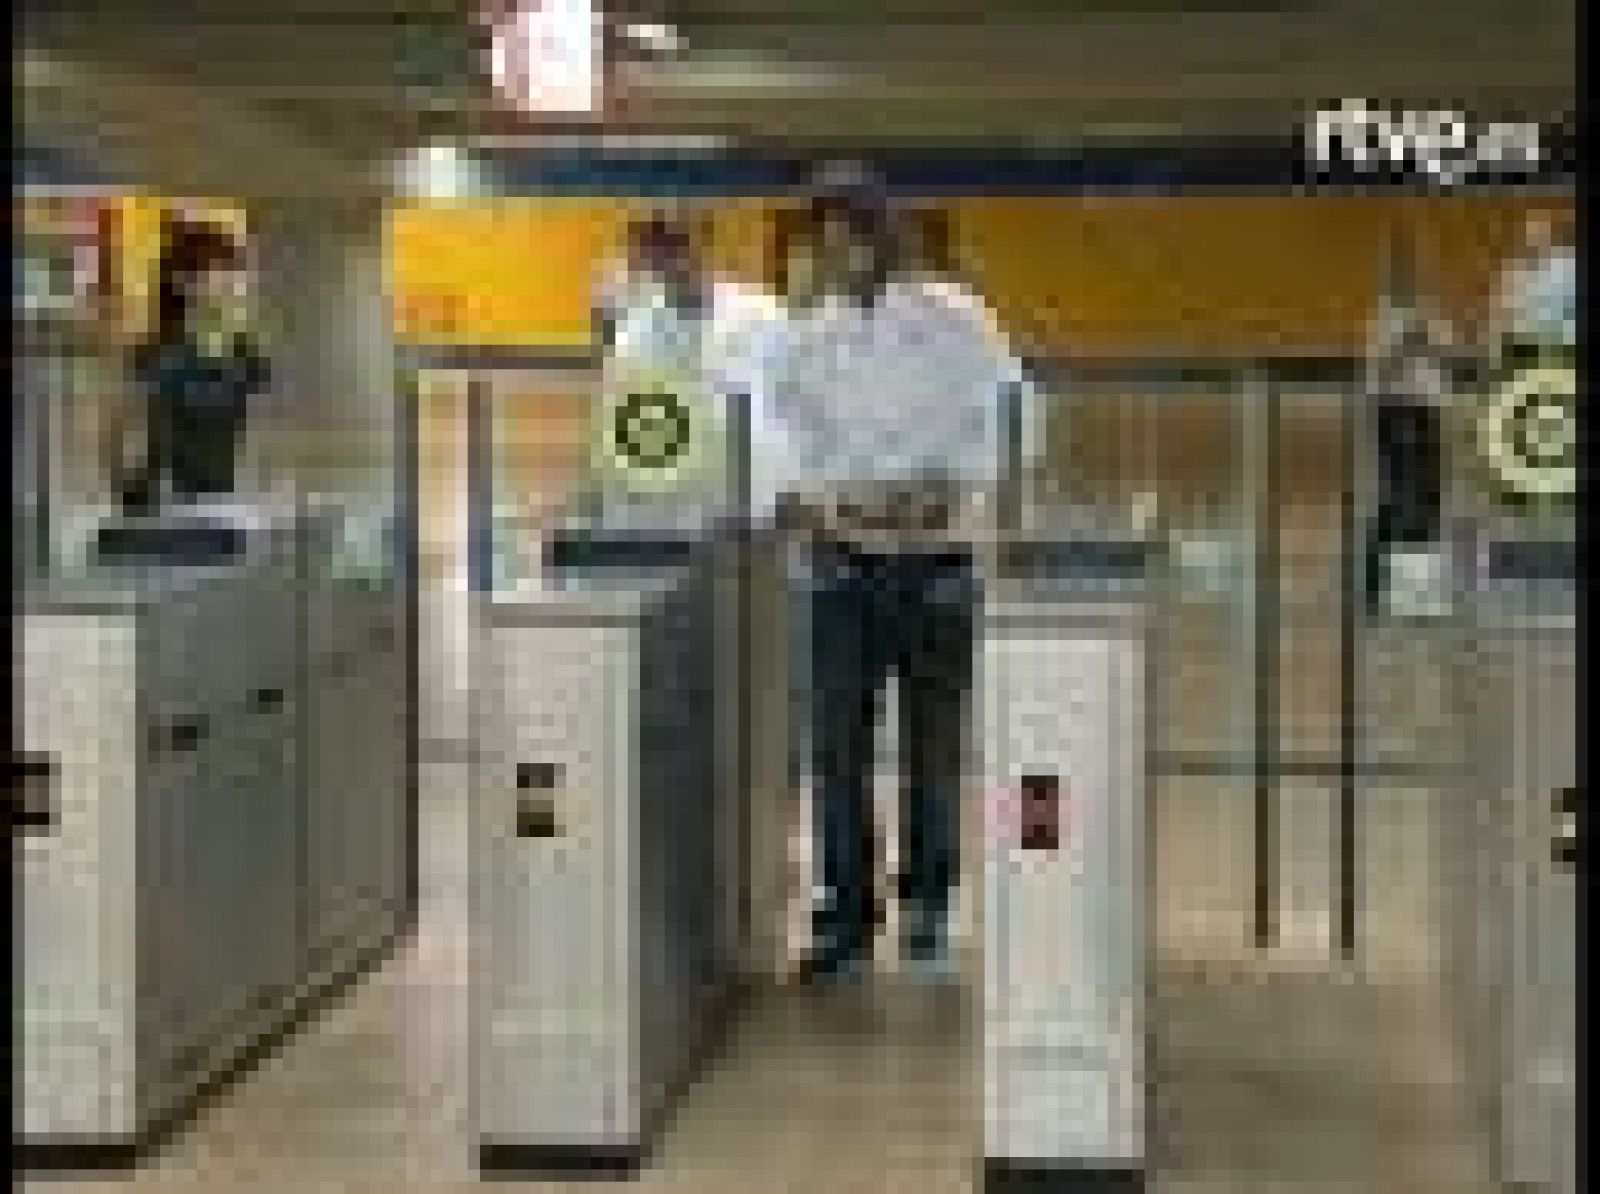  Sergio Ramos, Van der Vaart y Raúl García comparten vagón de metro